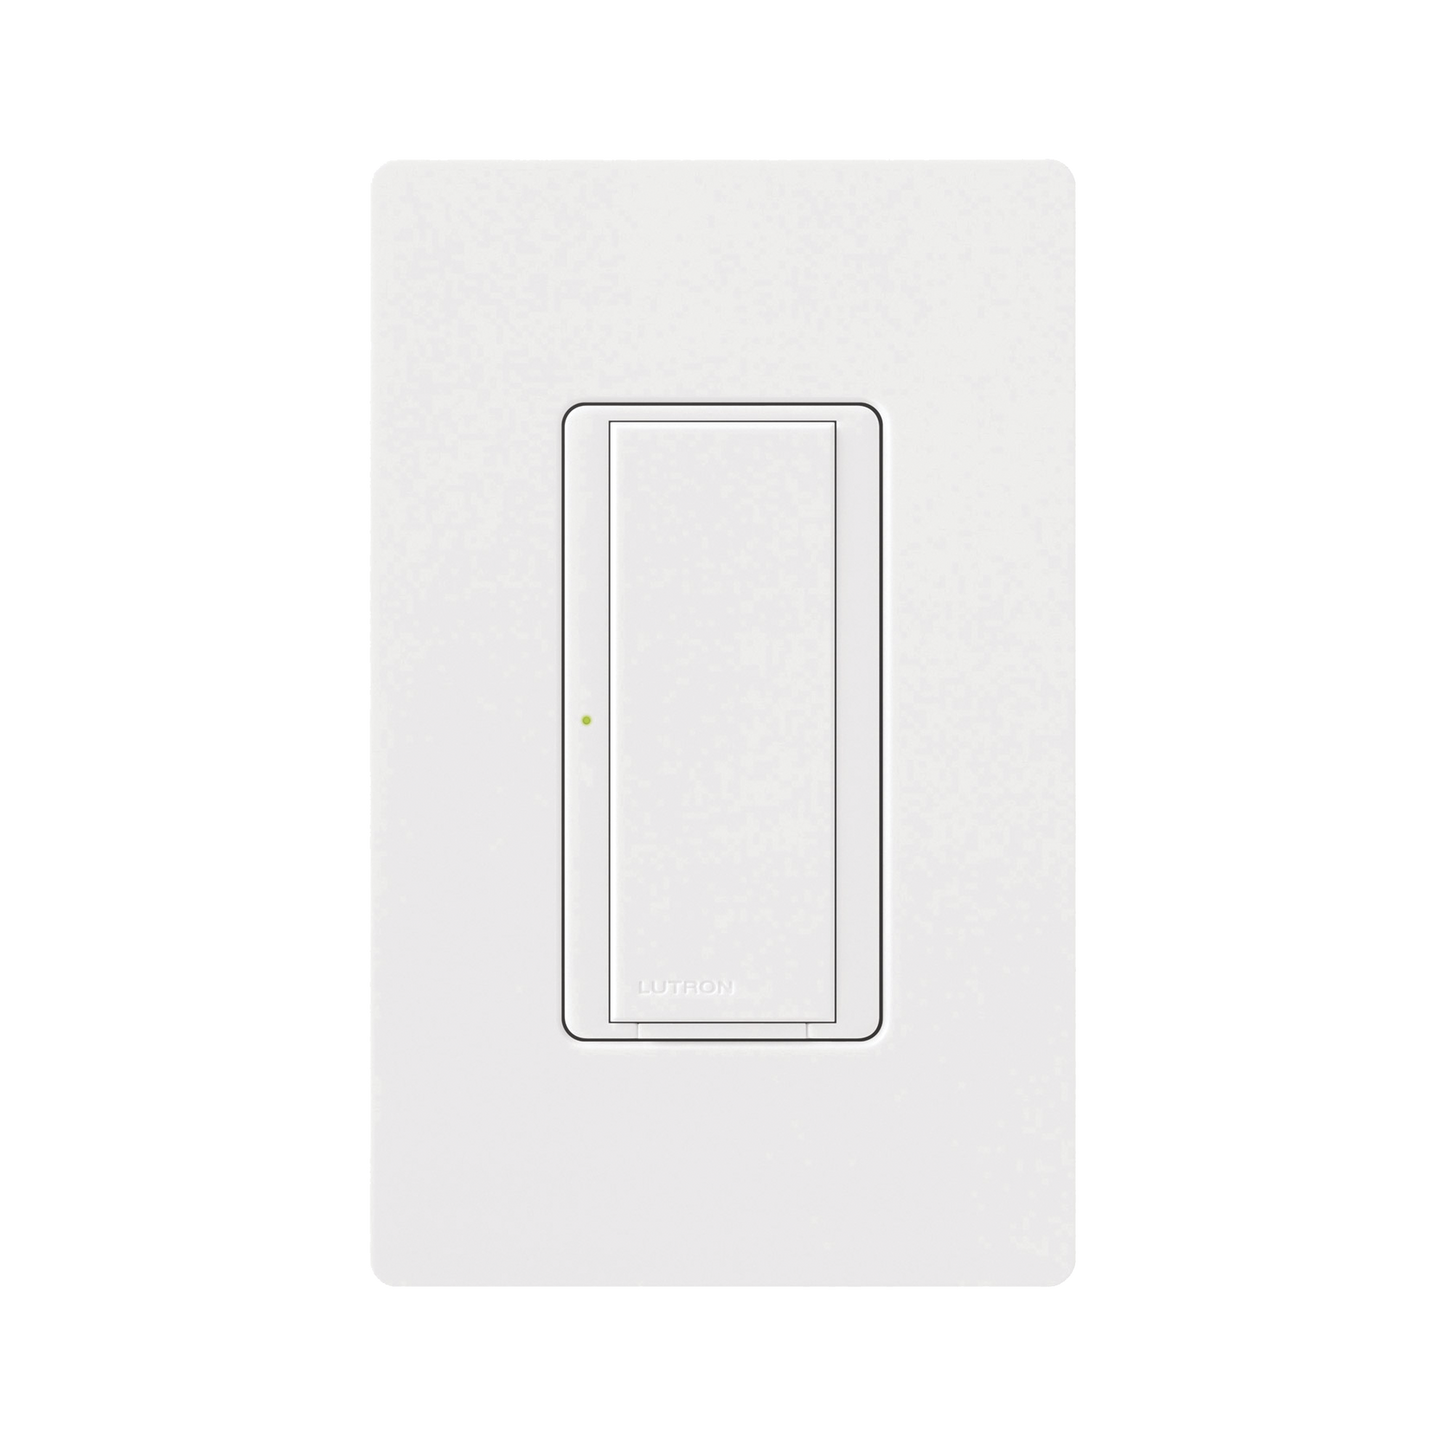 Maestro Switch, multilocacion / un solo polo, 120V, 8A color blanco